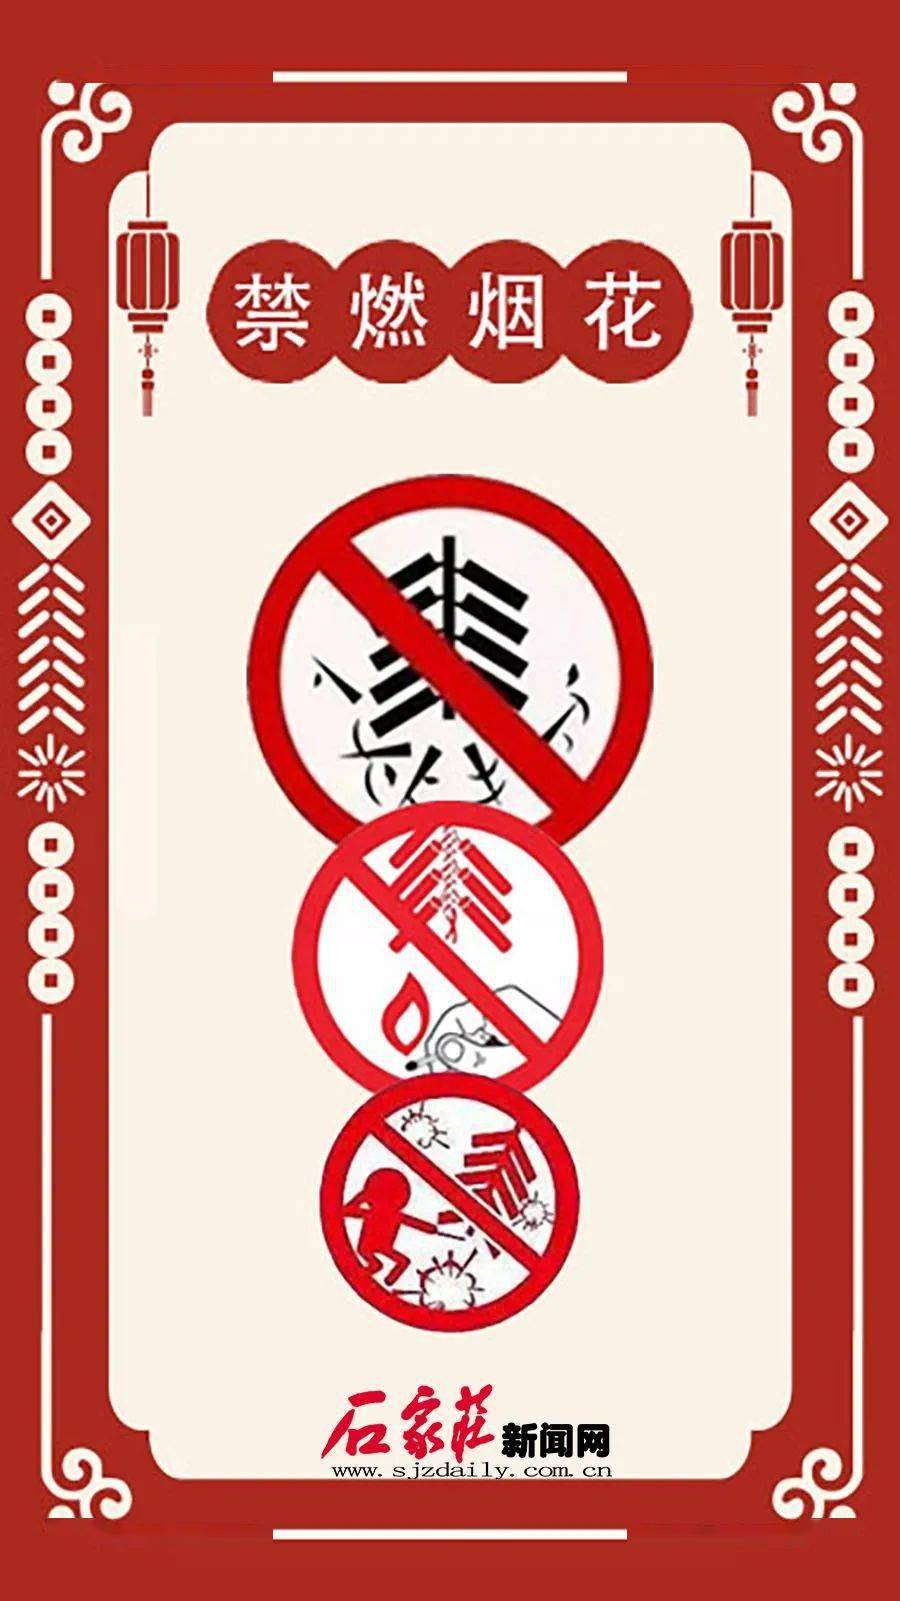 石家庄市区全年禁止燃放烟花爆竹宣传海报